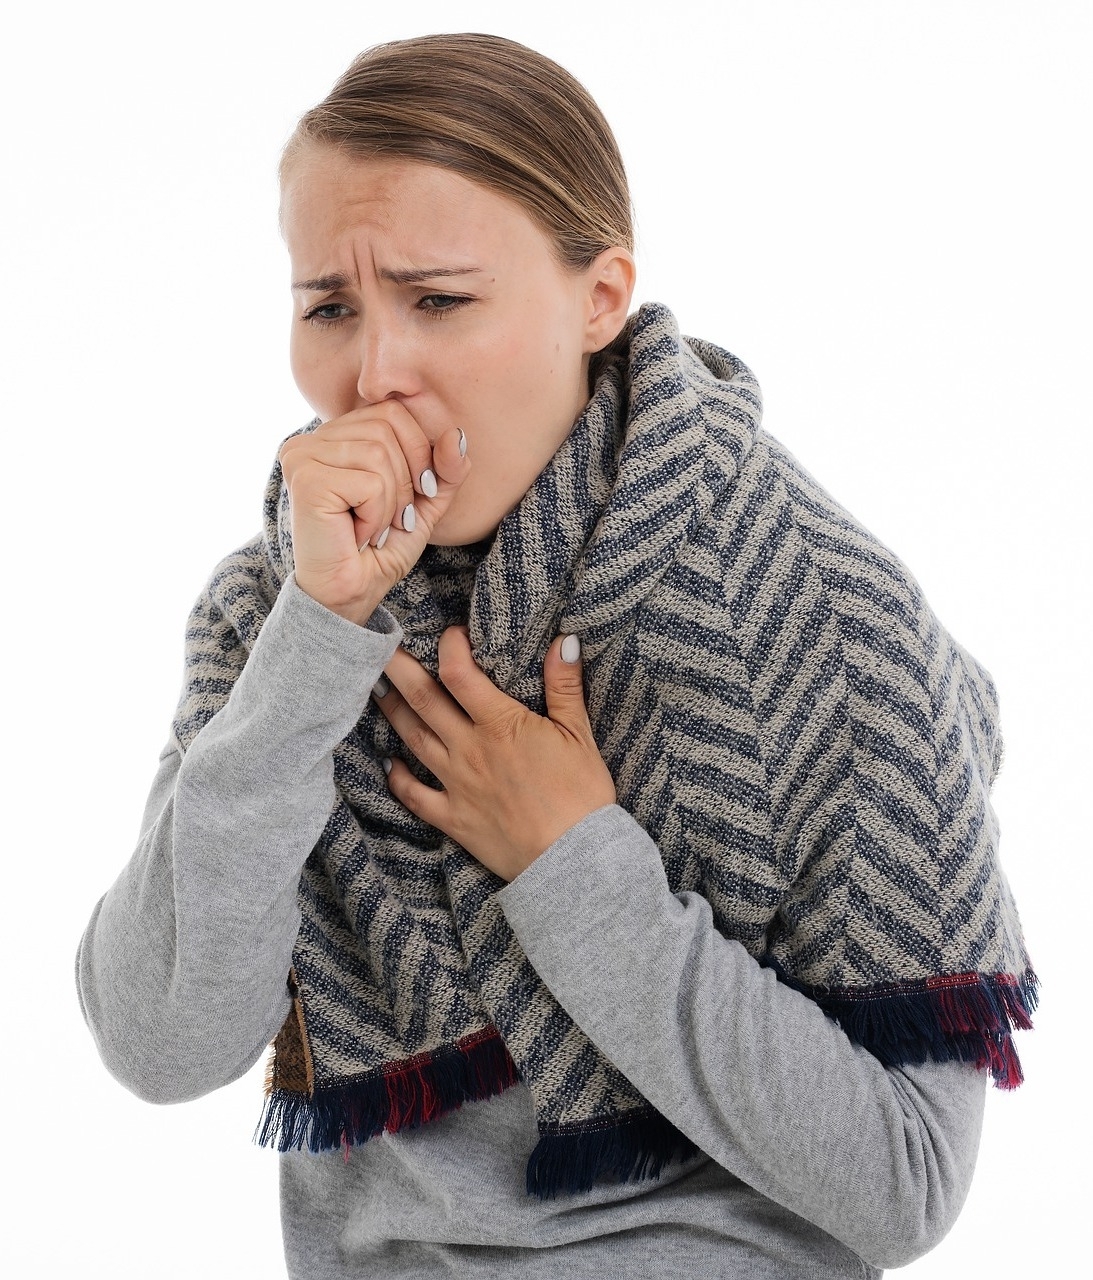 A tüdőrák tünetei - mik a legáltalánosabb panaszok?